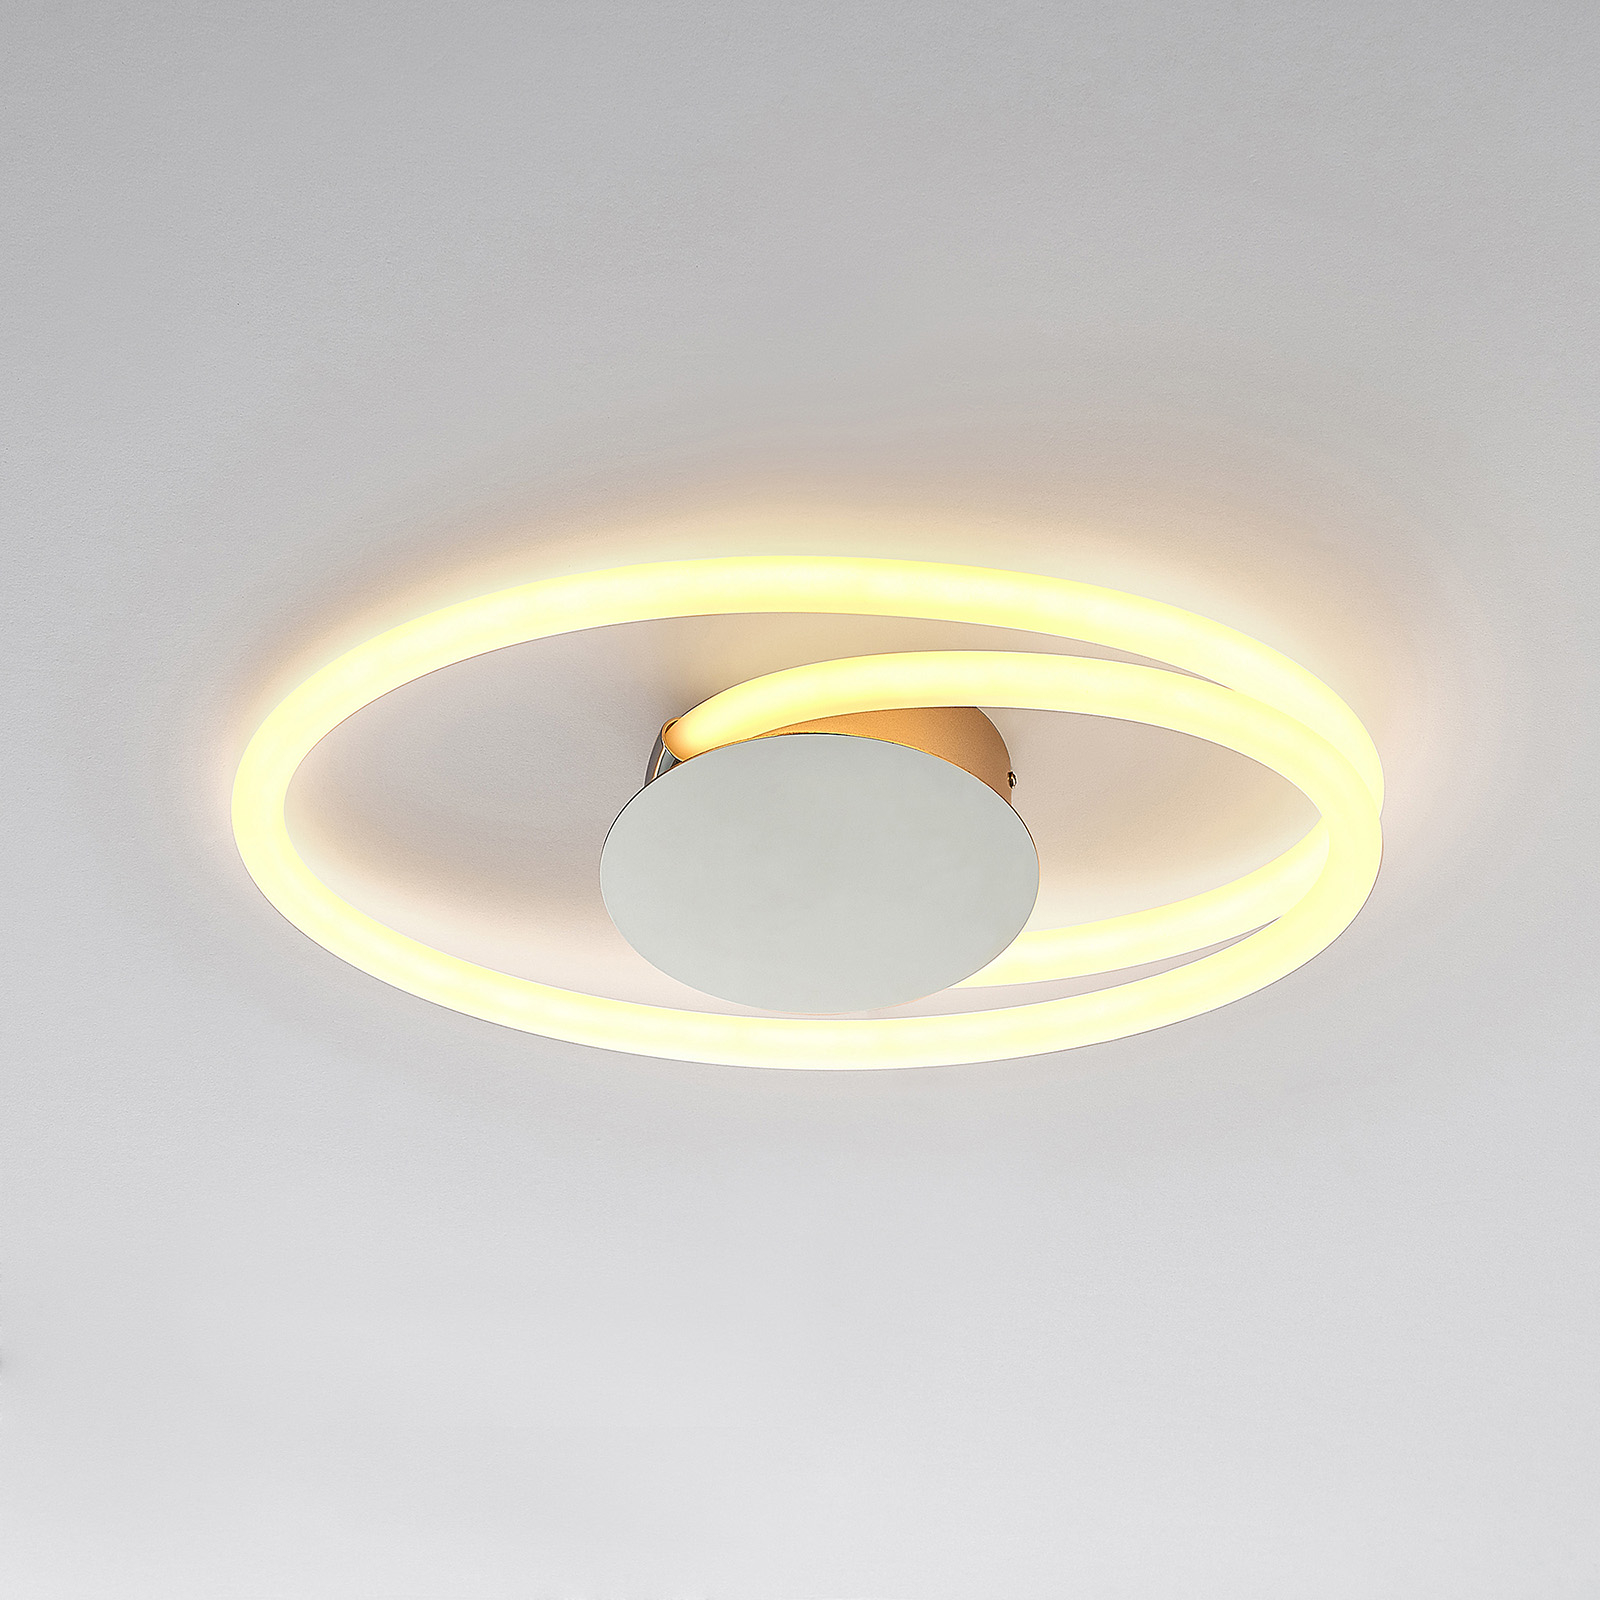 Lucande Ovala LED-taklampa, 53 cm